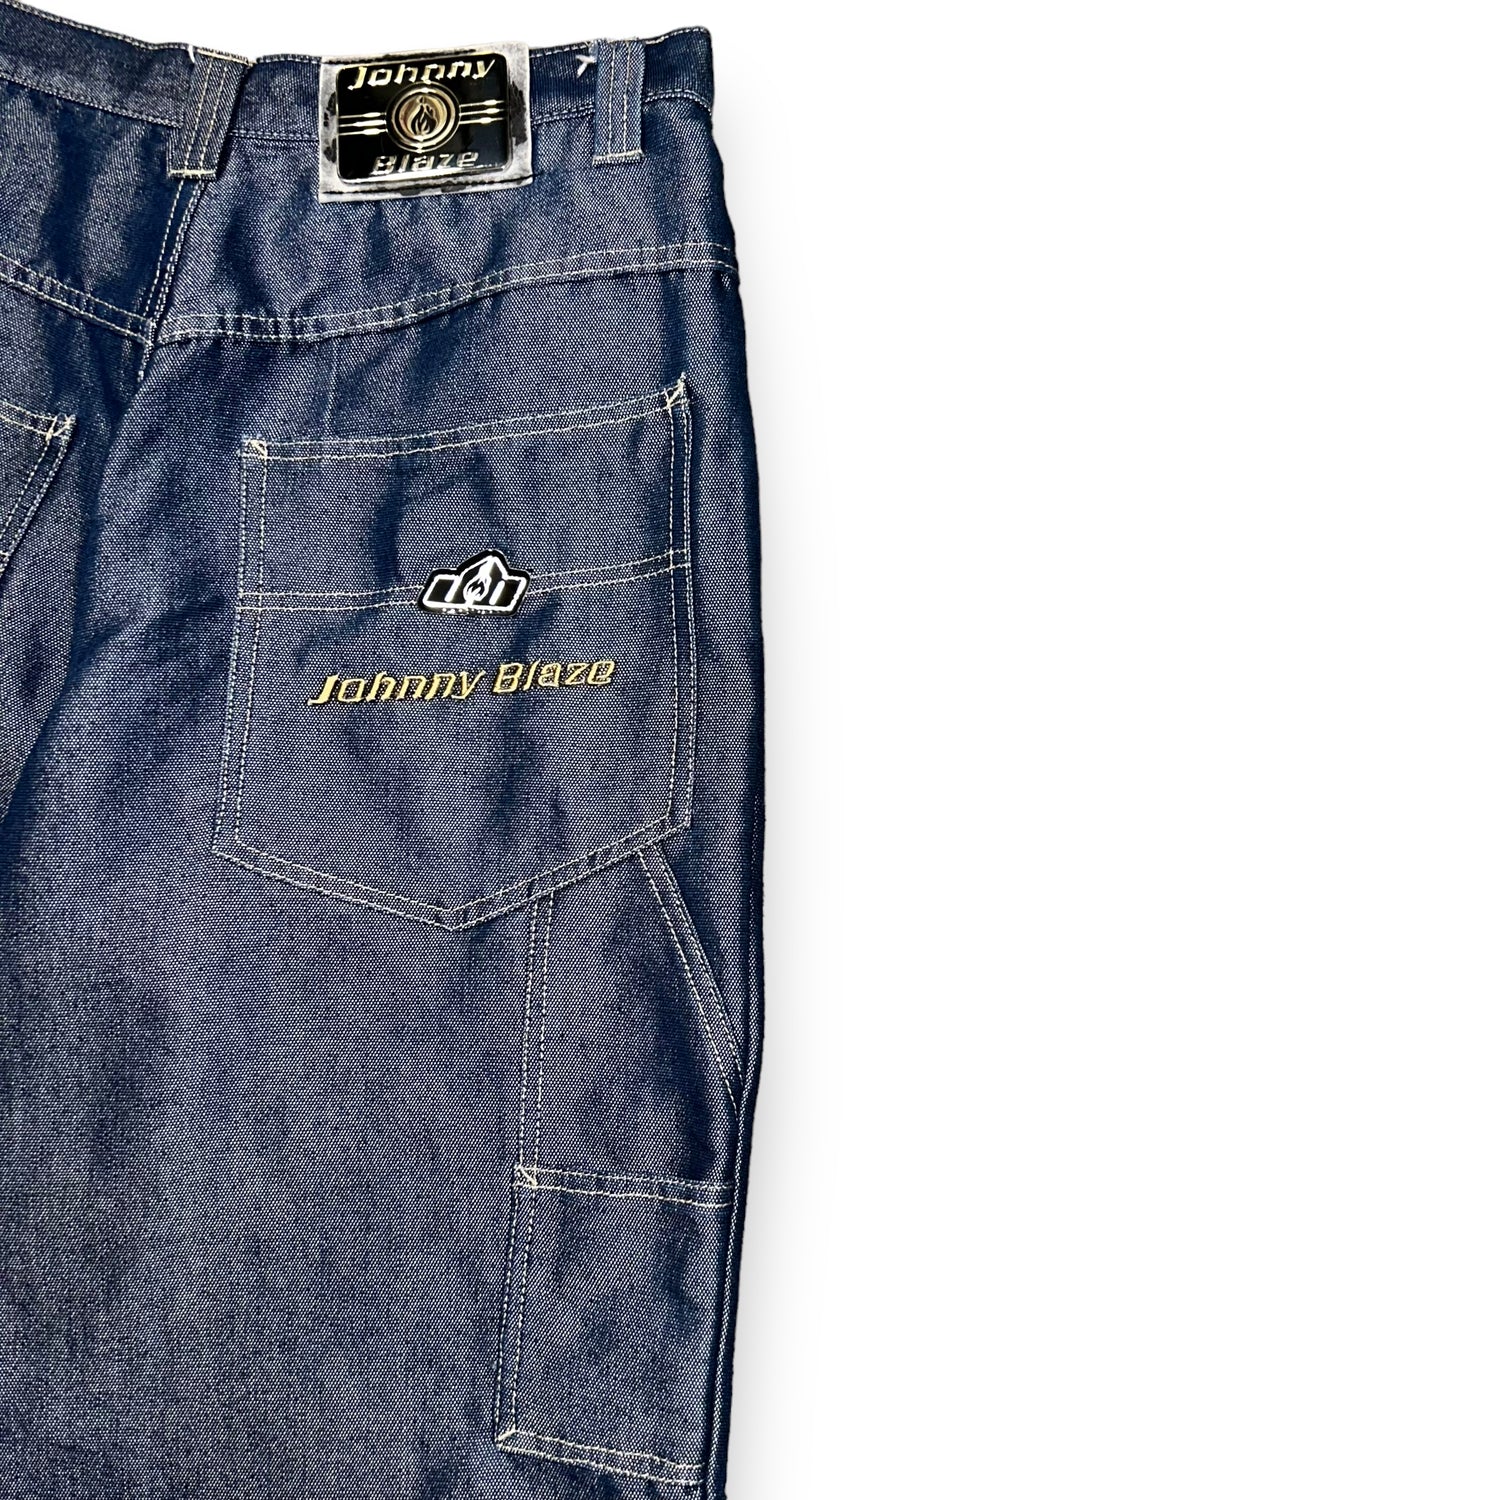 Baggy Jeans Johnny Blaze Vintage Shiny  (32 USA  M/L)